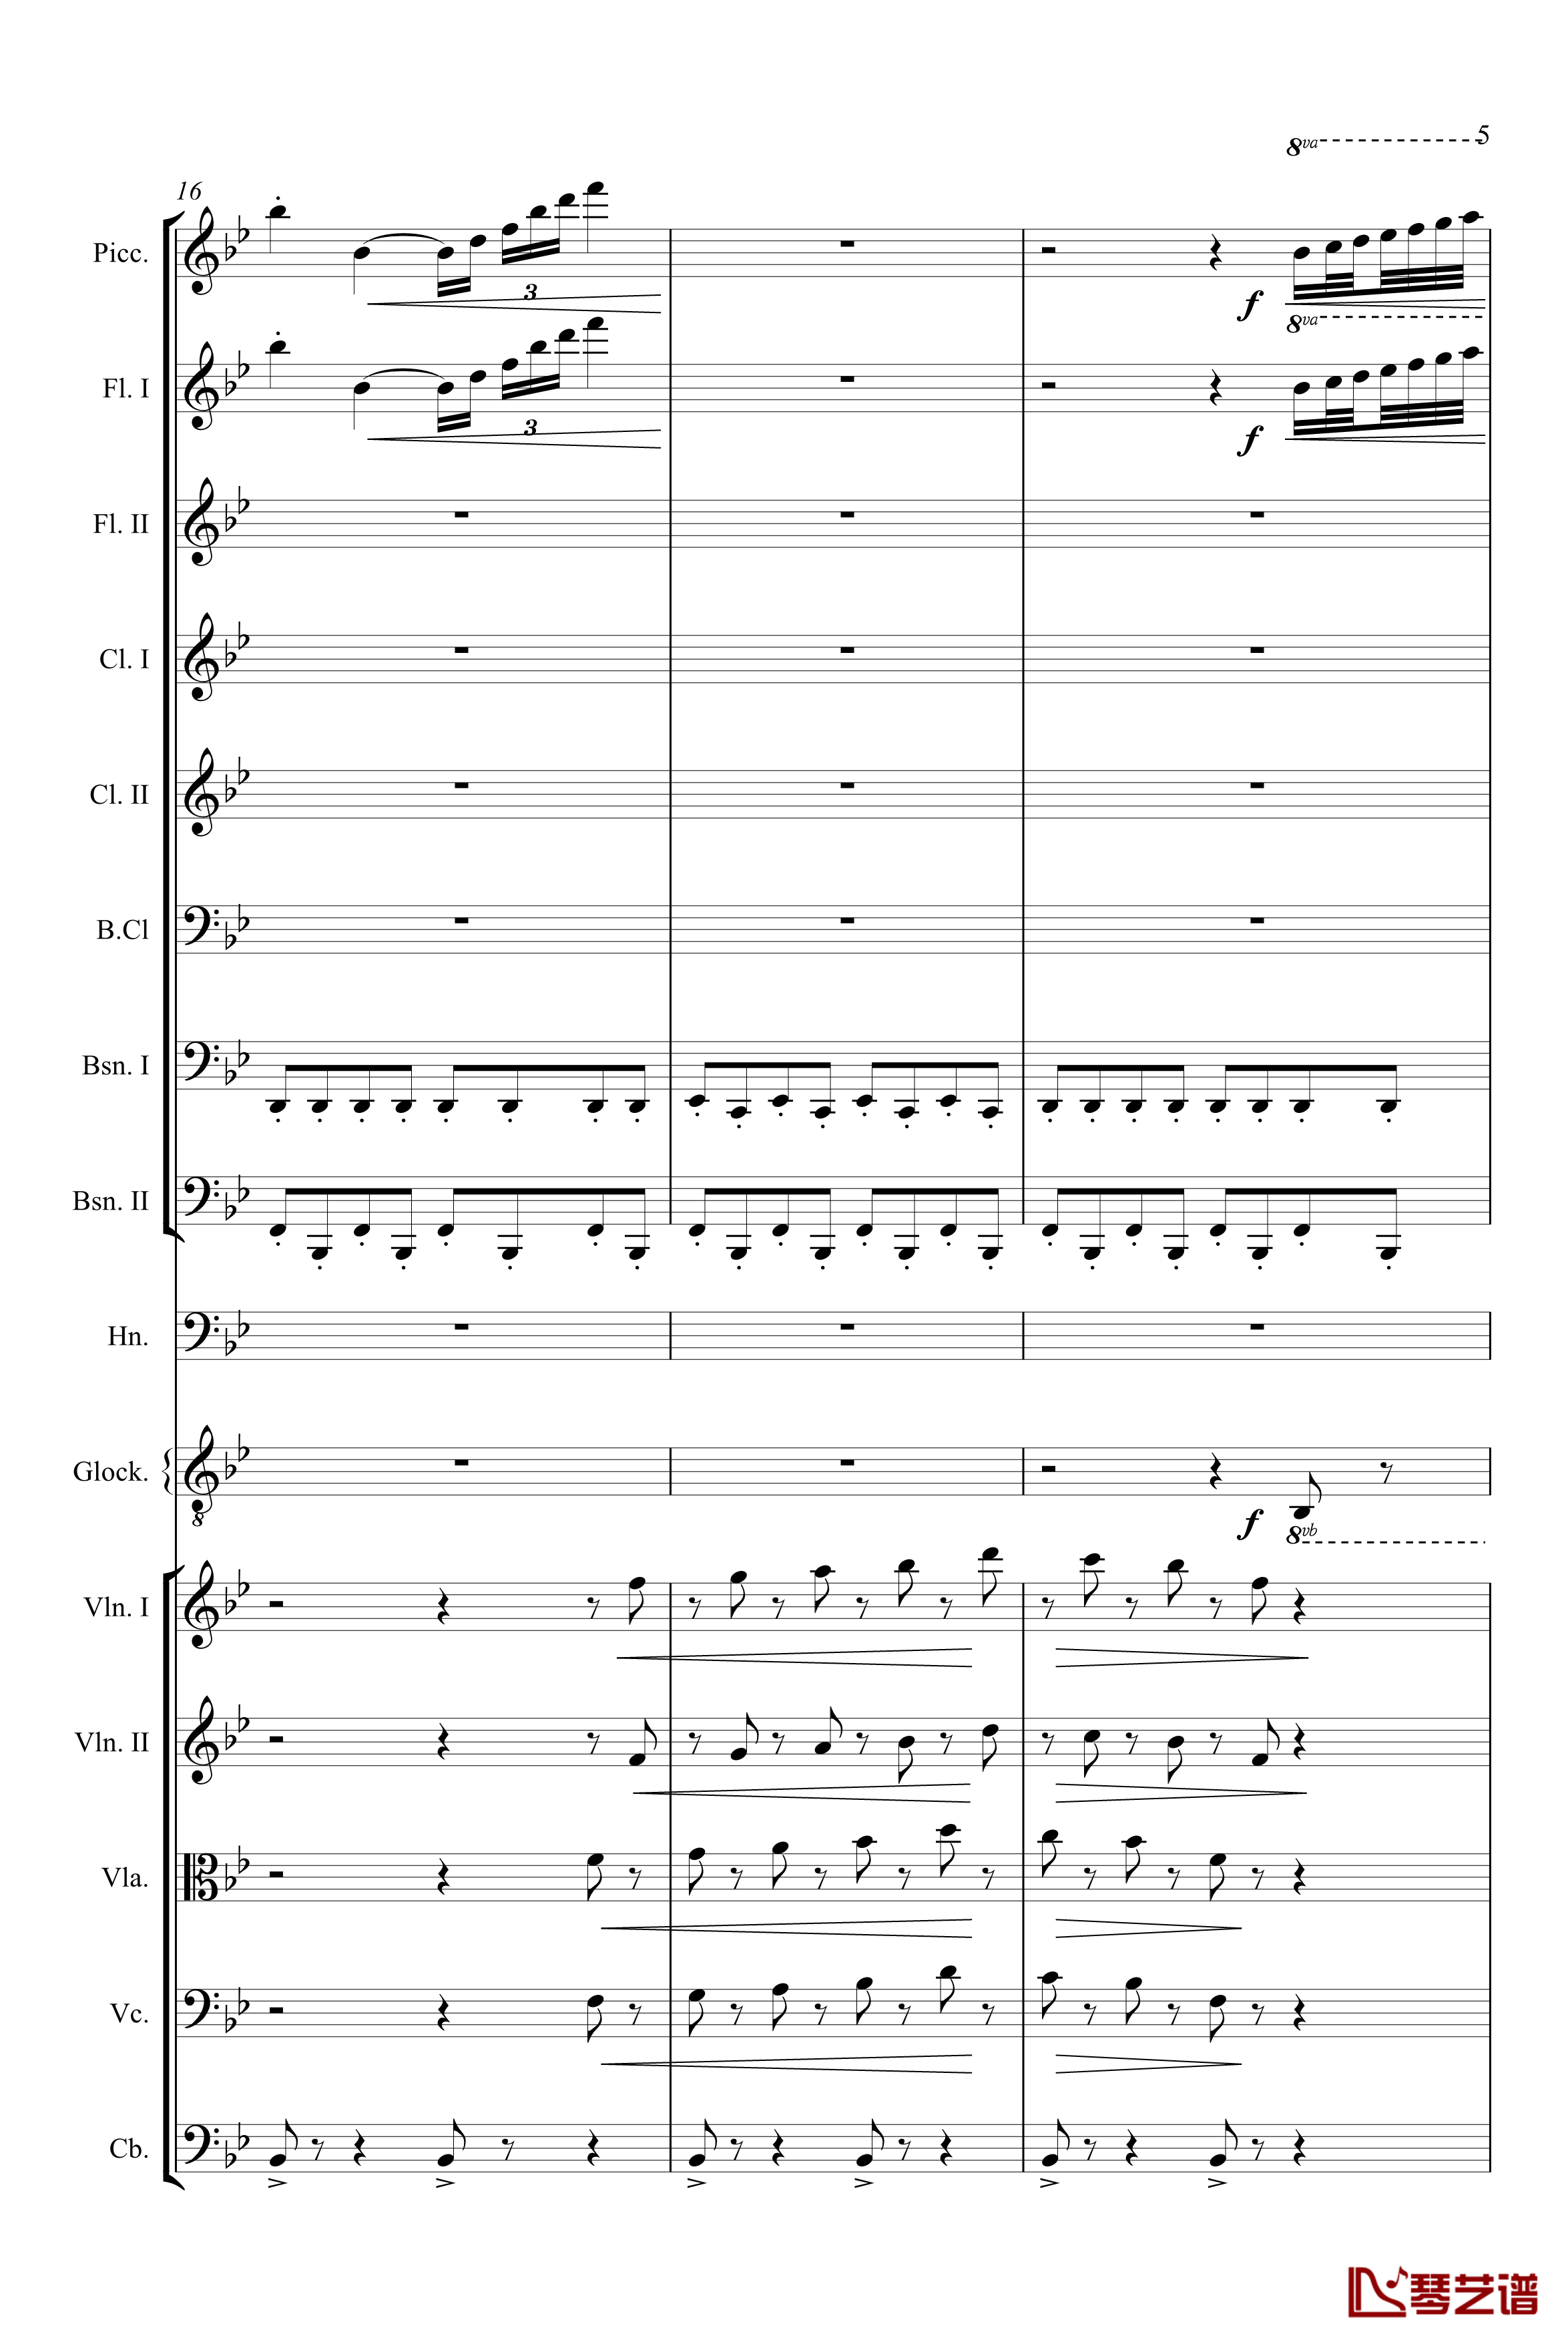 胡桃夹子组曲茶钢琴谱-柴科夫斯基-Peter Ilyich Tchaikovsky5